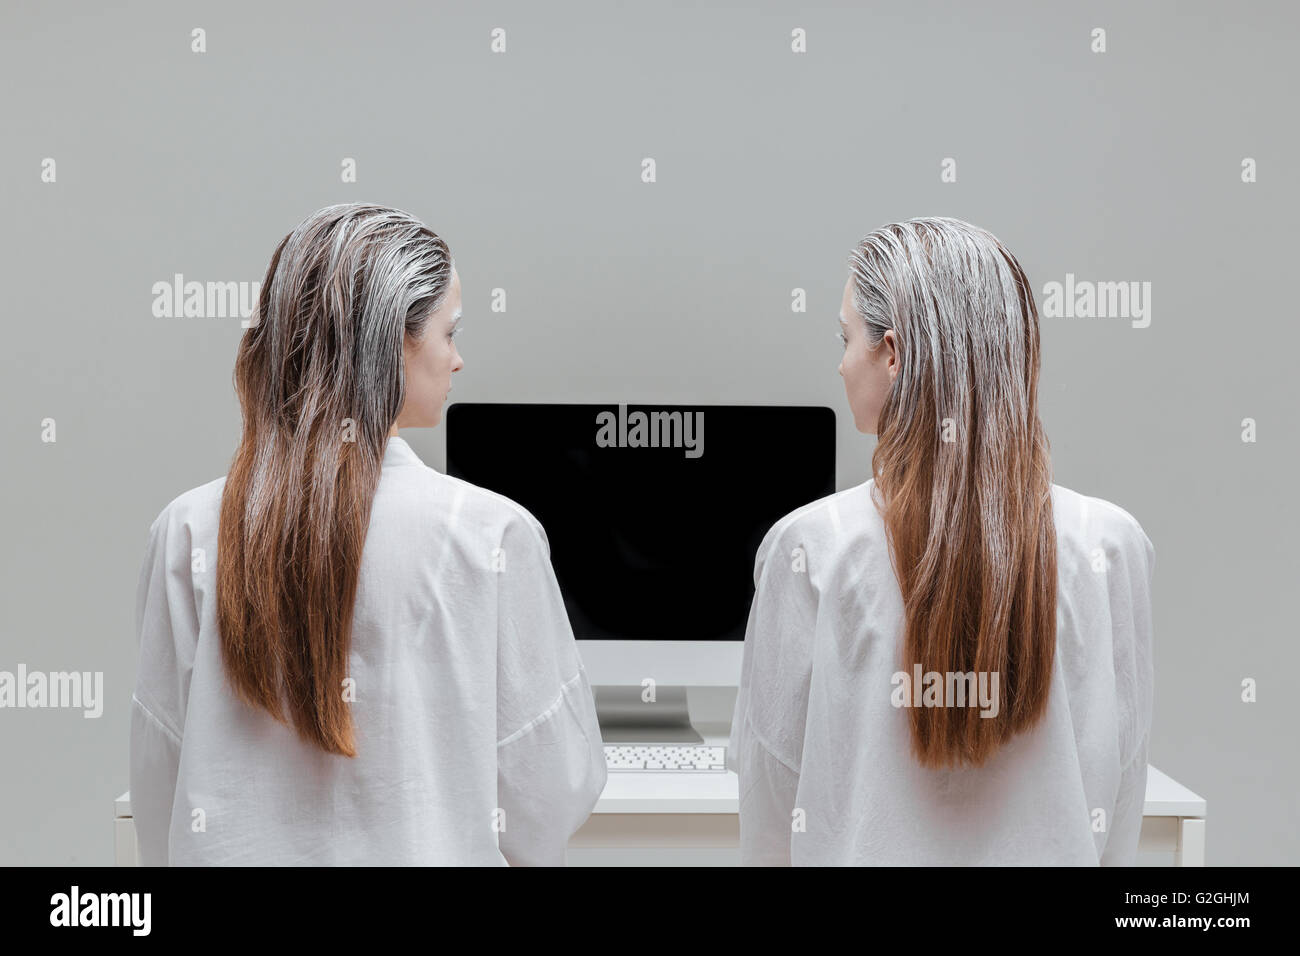 Deux femmes à la mystique de la mode à l'écran en blanc sur fond gris Banque D'Images